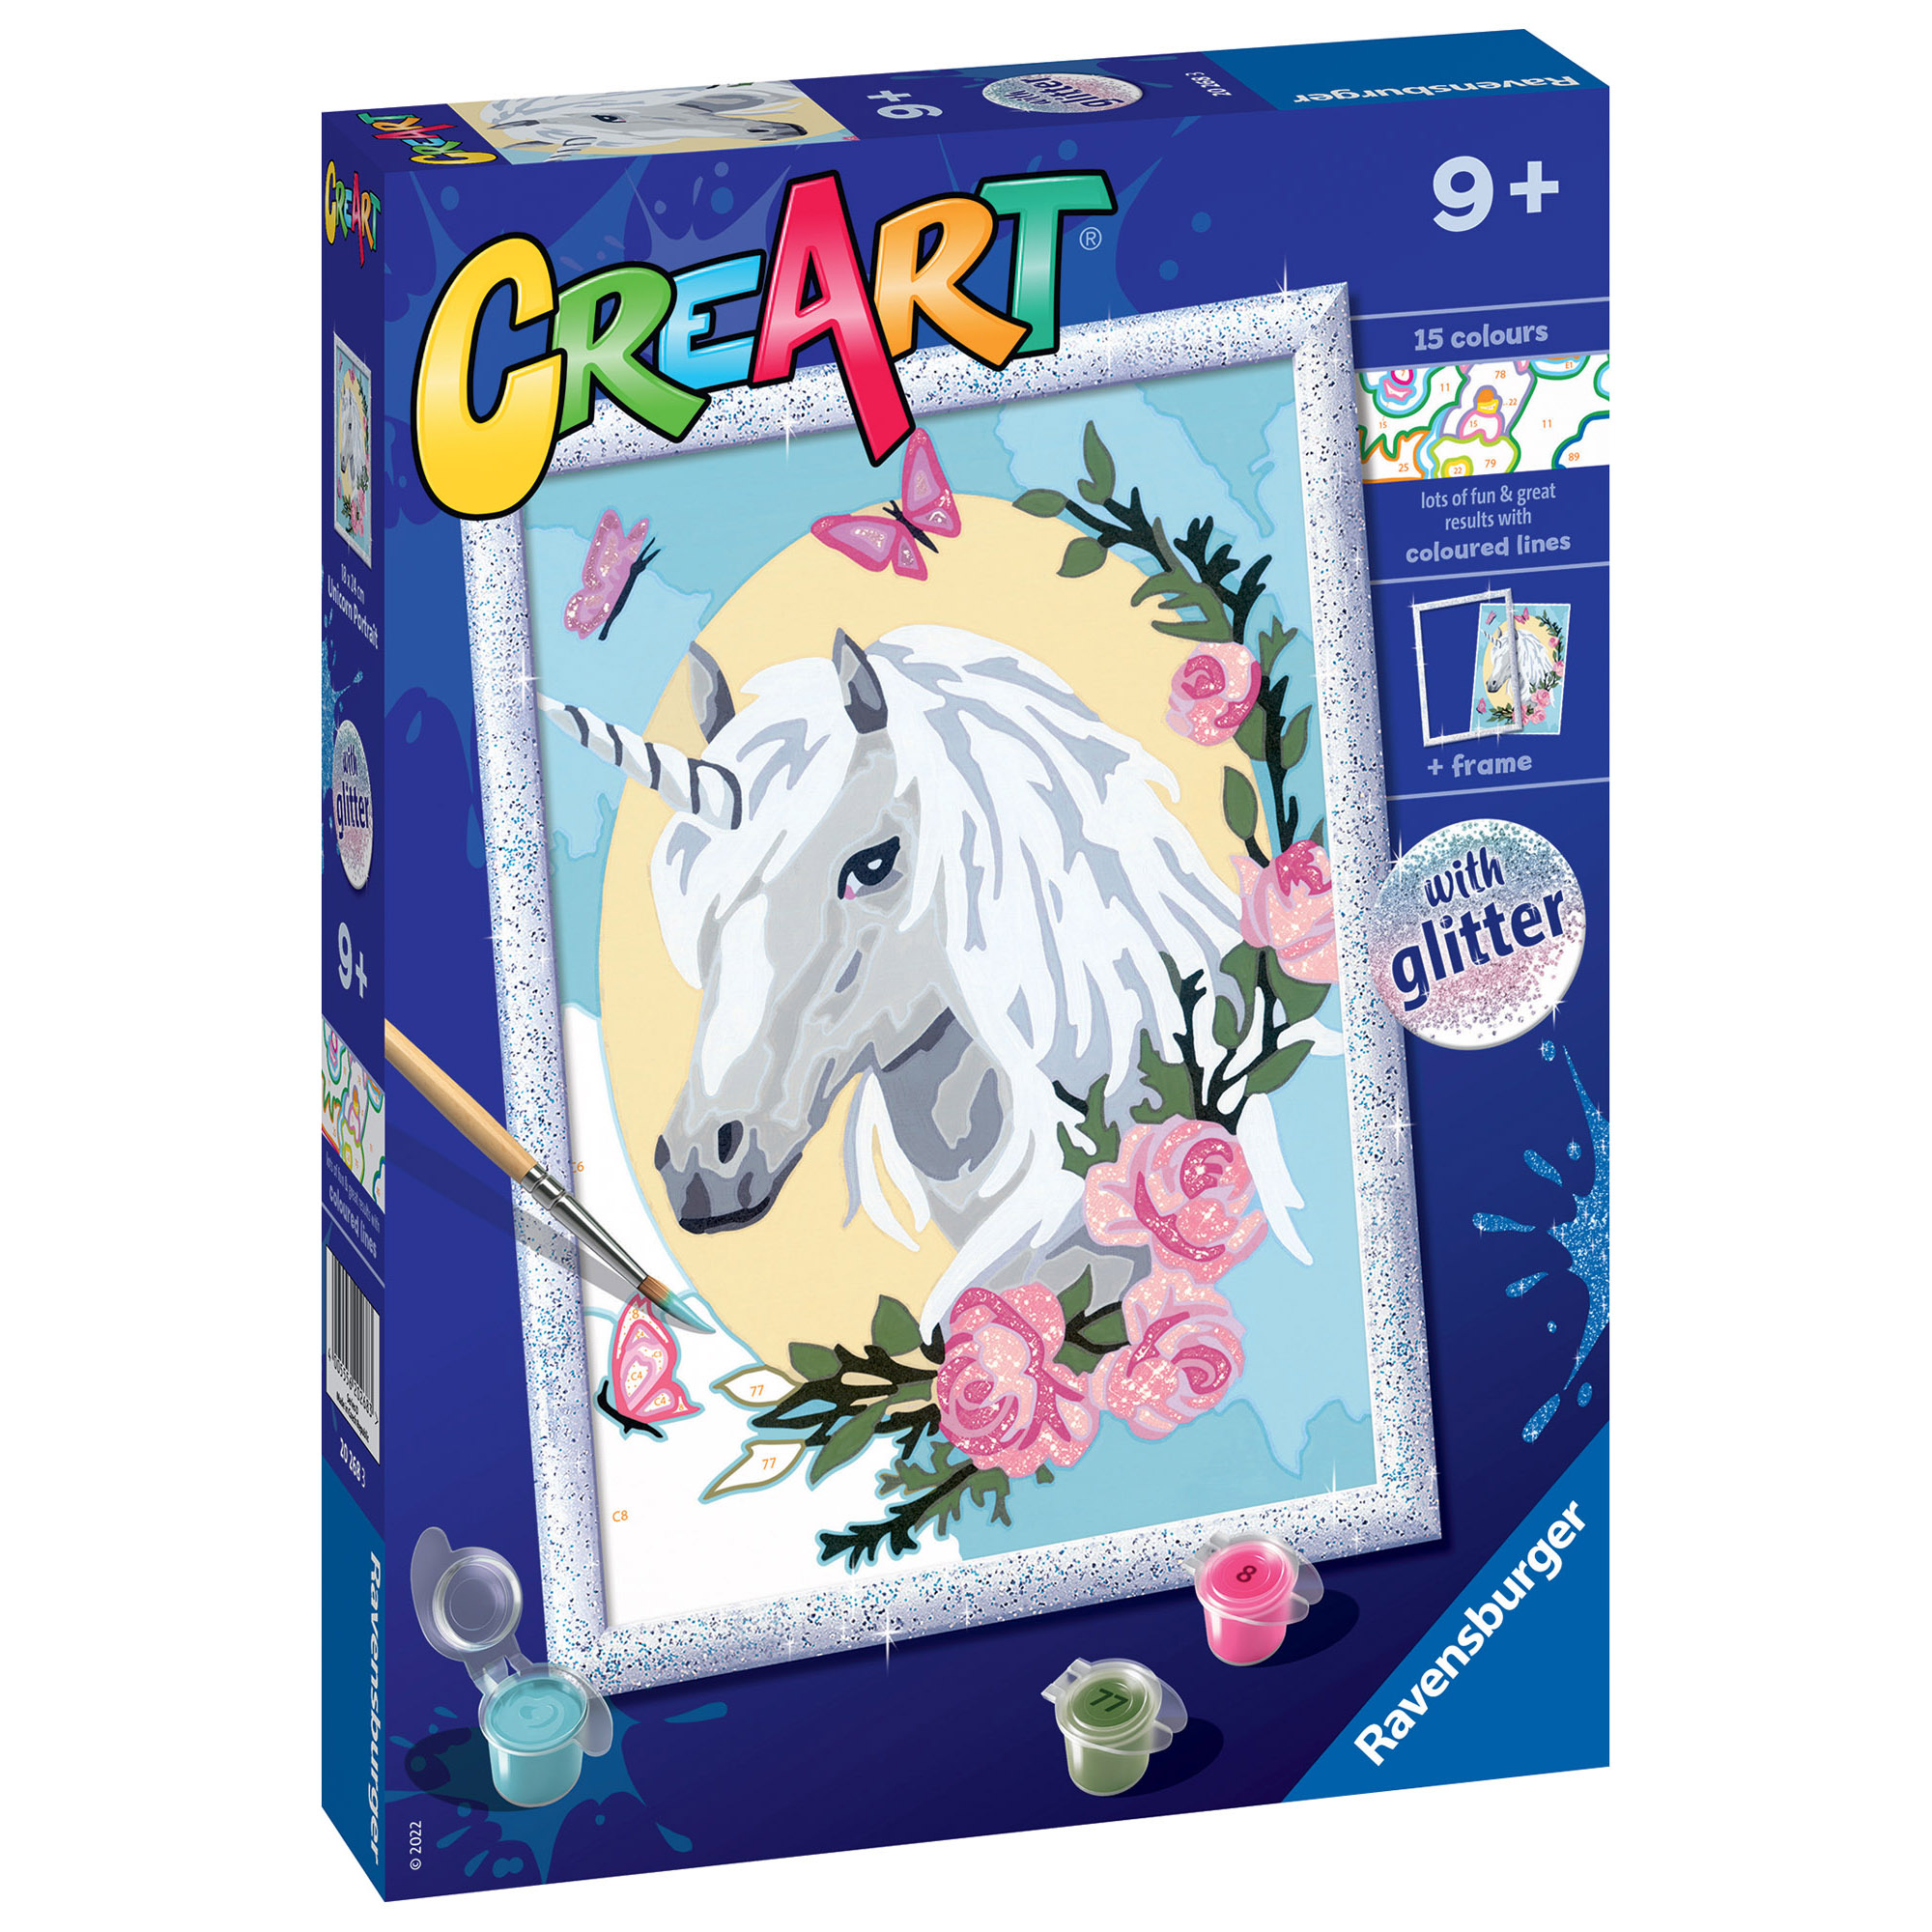 Ravensburger - creart serie d: ritratto di unicorno, kit per dipingere con i numeri, contiene una tavola prestampata, pennello, colori e accessori, gioco creativo per bambini 9+ anni - CREART